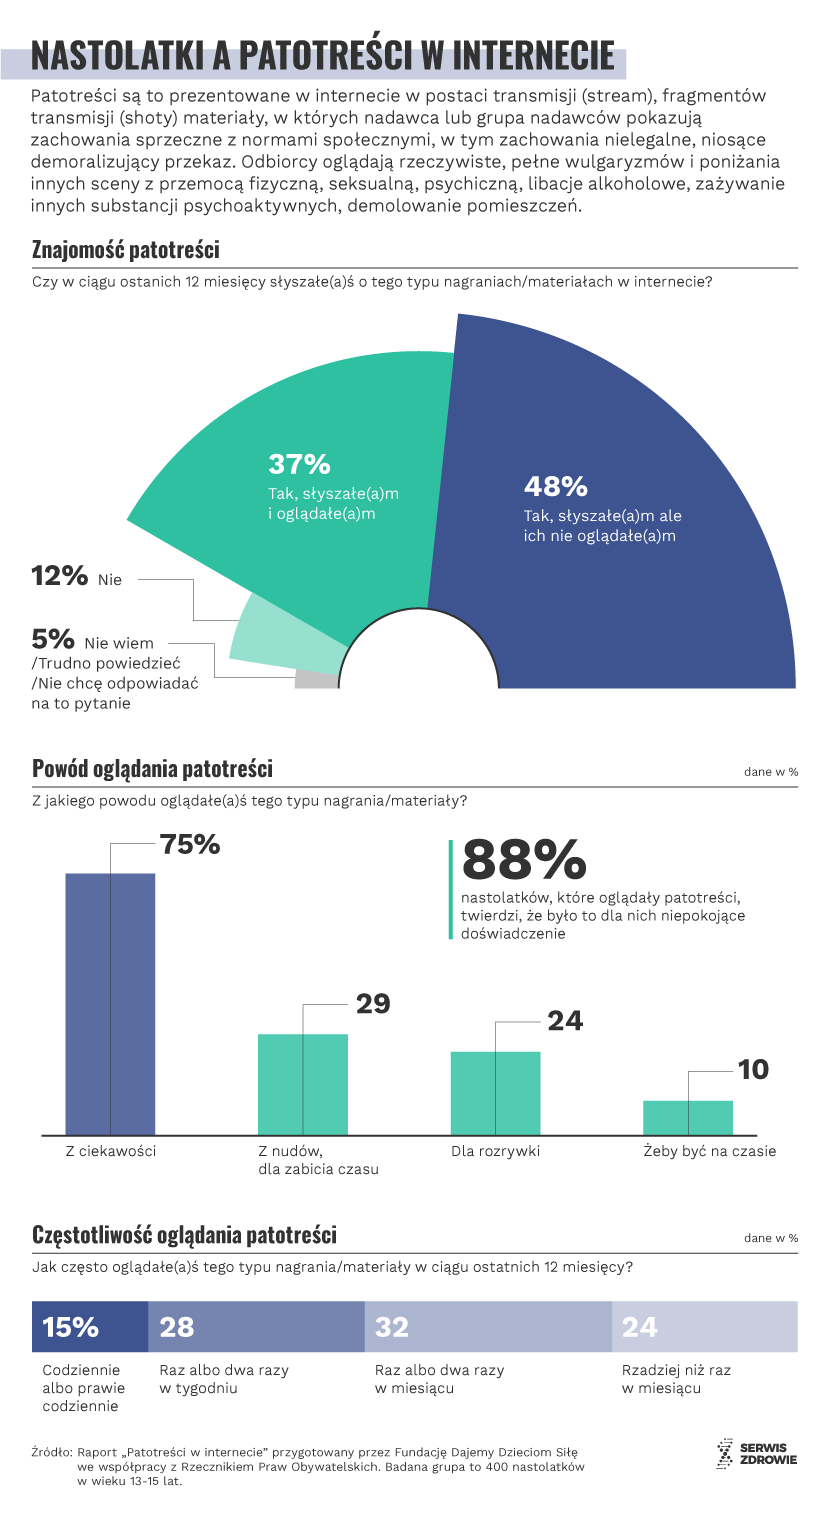 Infografika PAP/Serwis Zdrowie/M. Samczuk